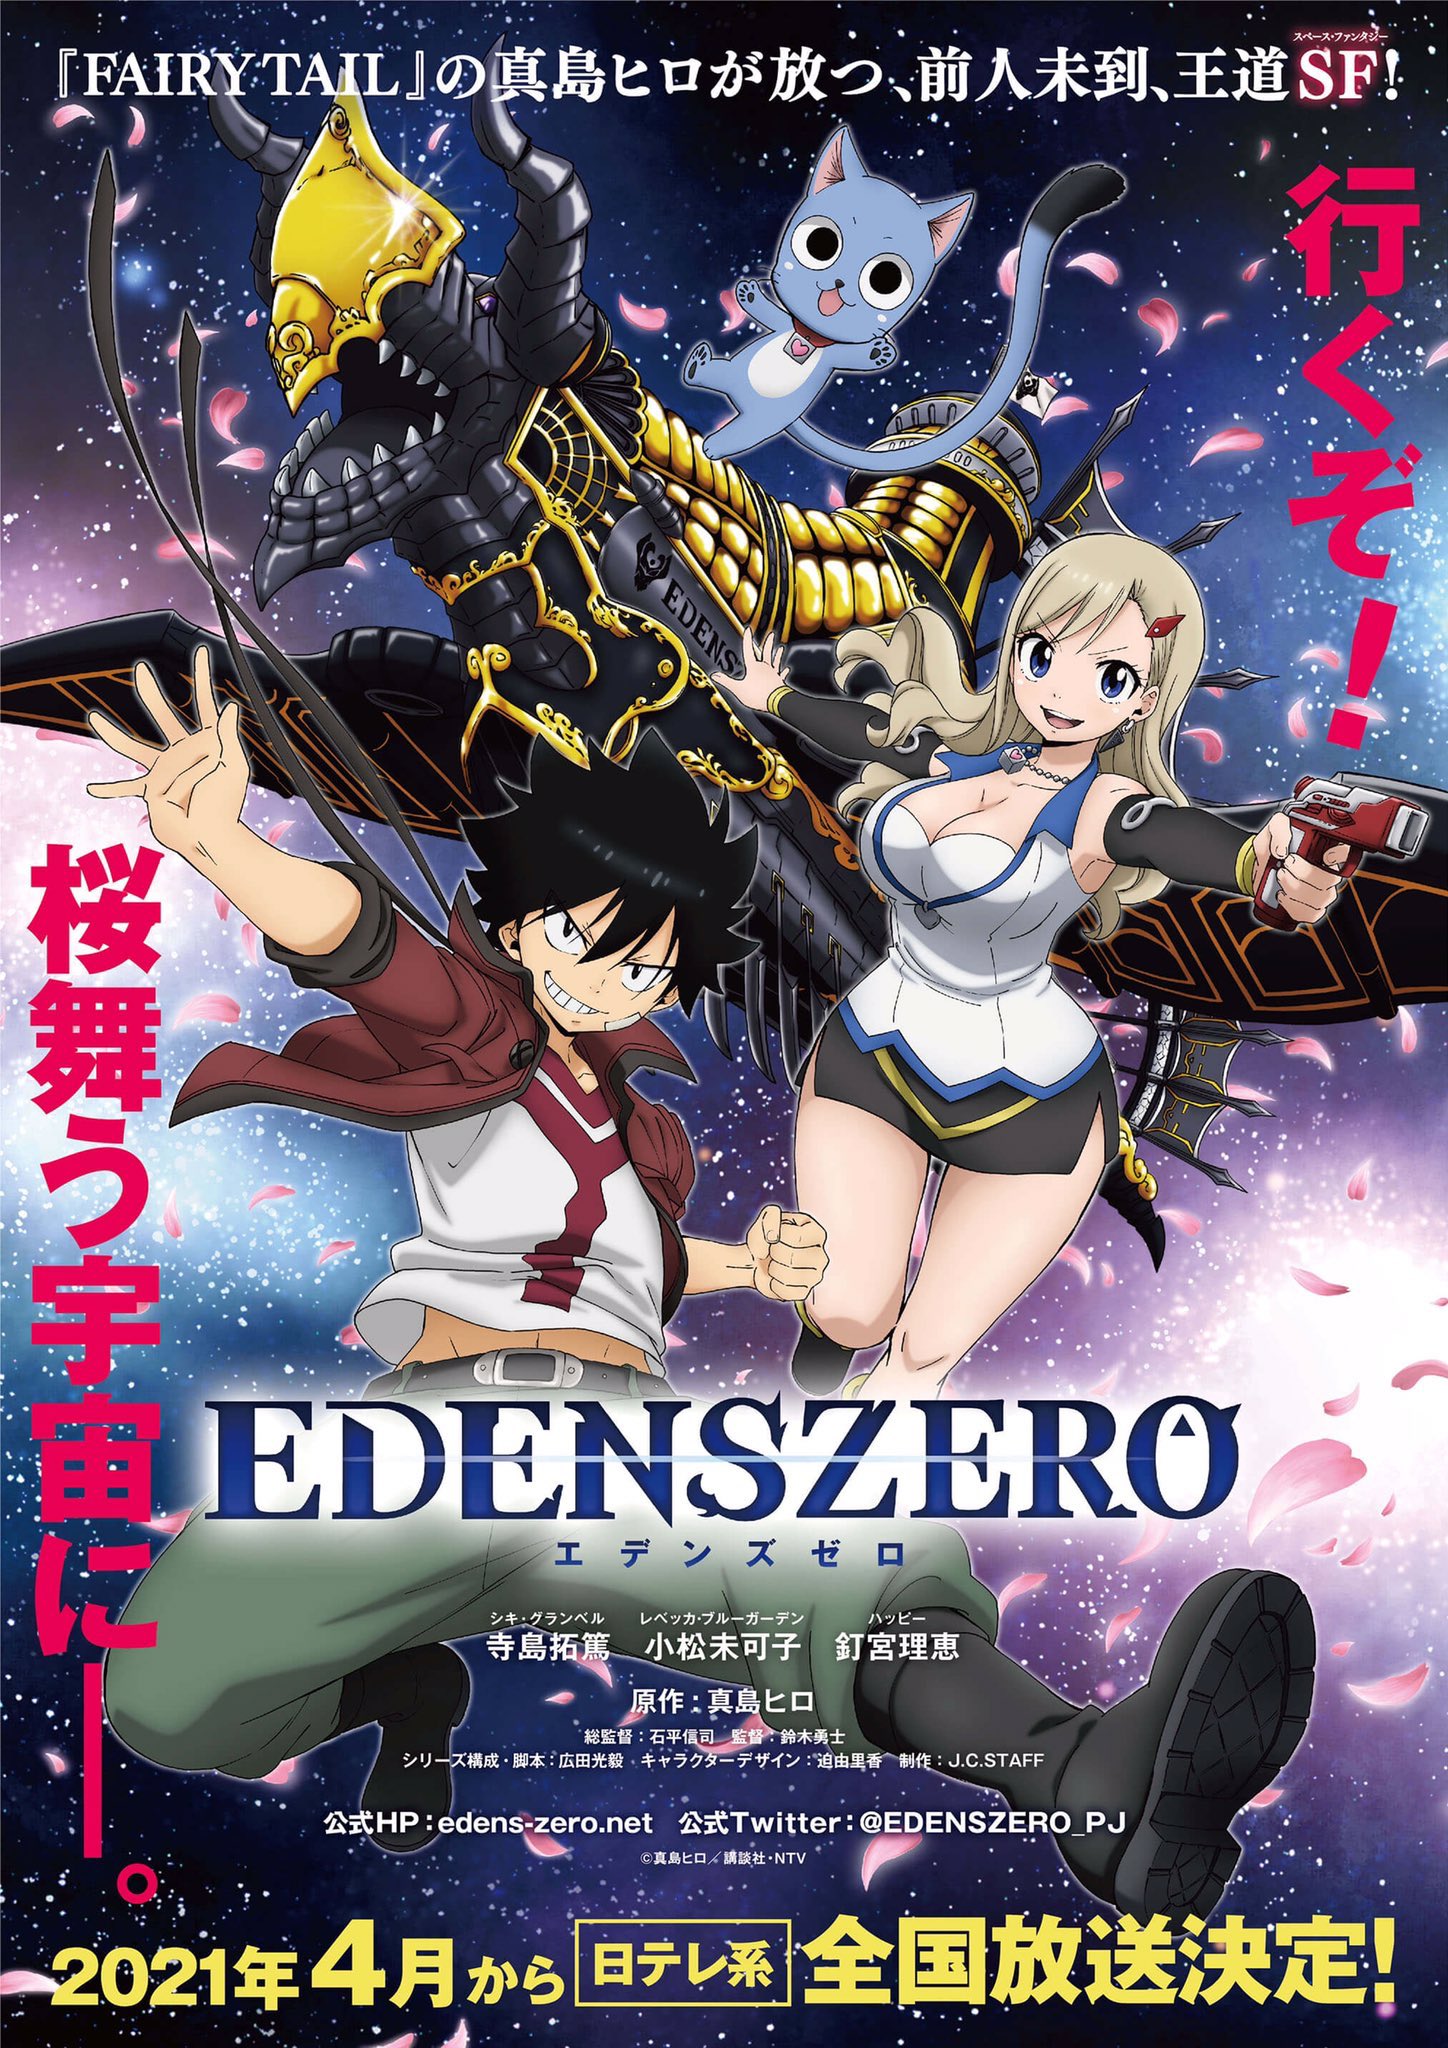 Edens Zero anime April 2021 - key visual